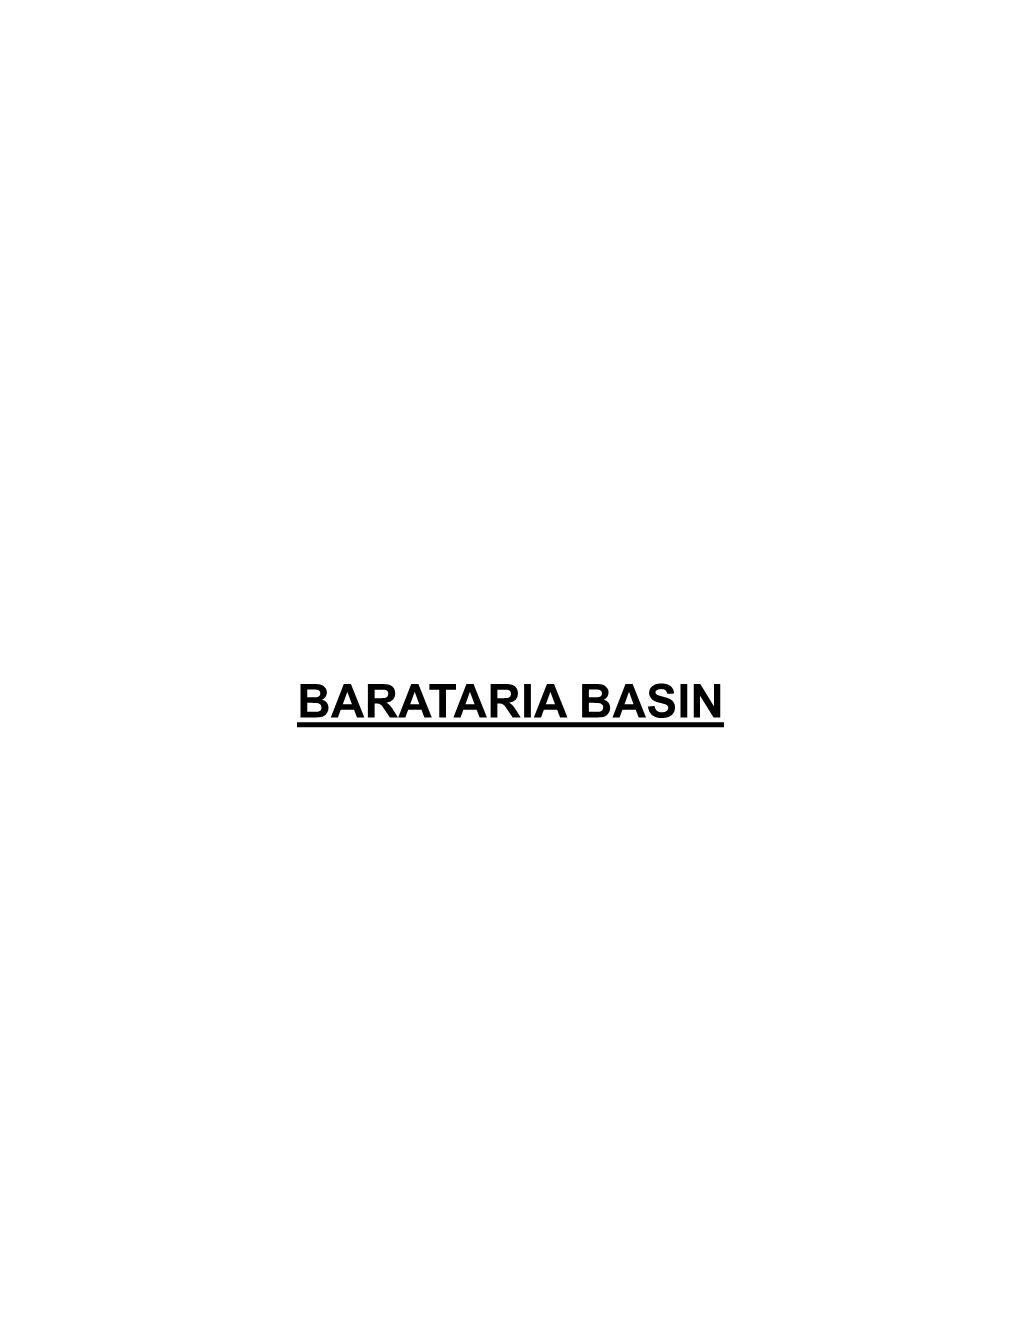 Barataria Basin